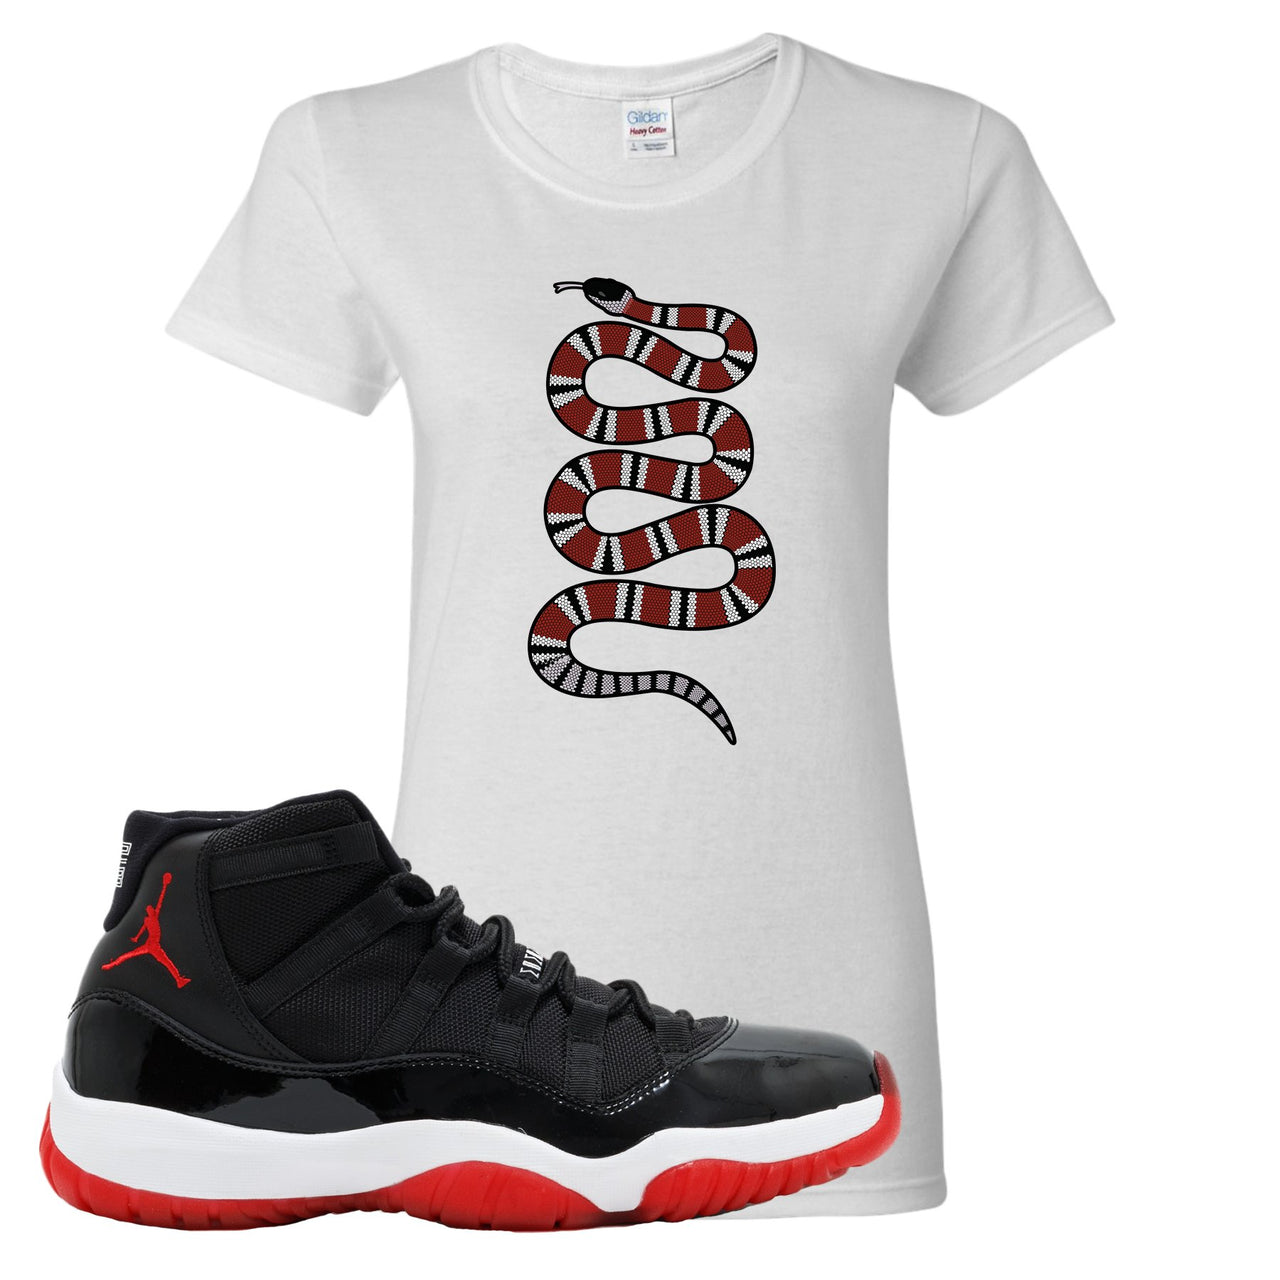 Jordan 11 Bred Coiled Snake White Sneaker Hook Up Women's T-Shirt